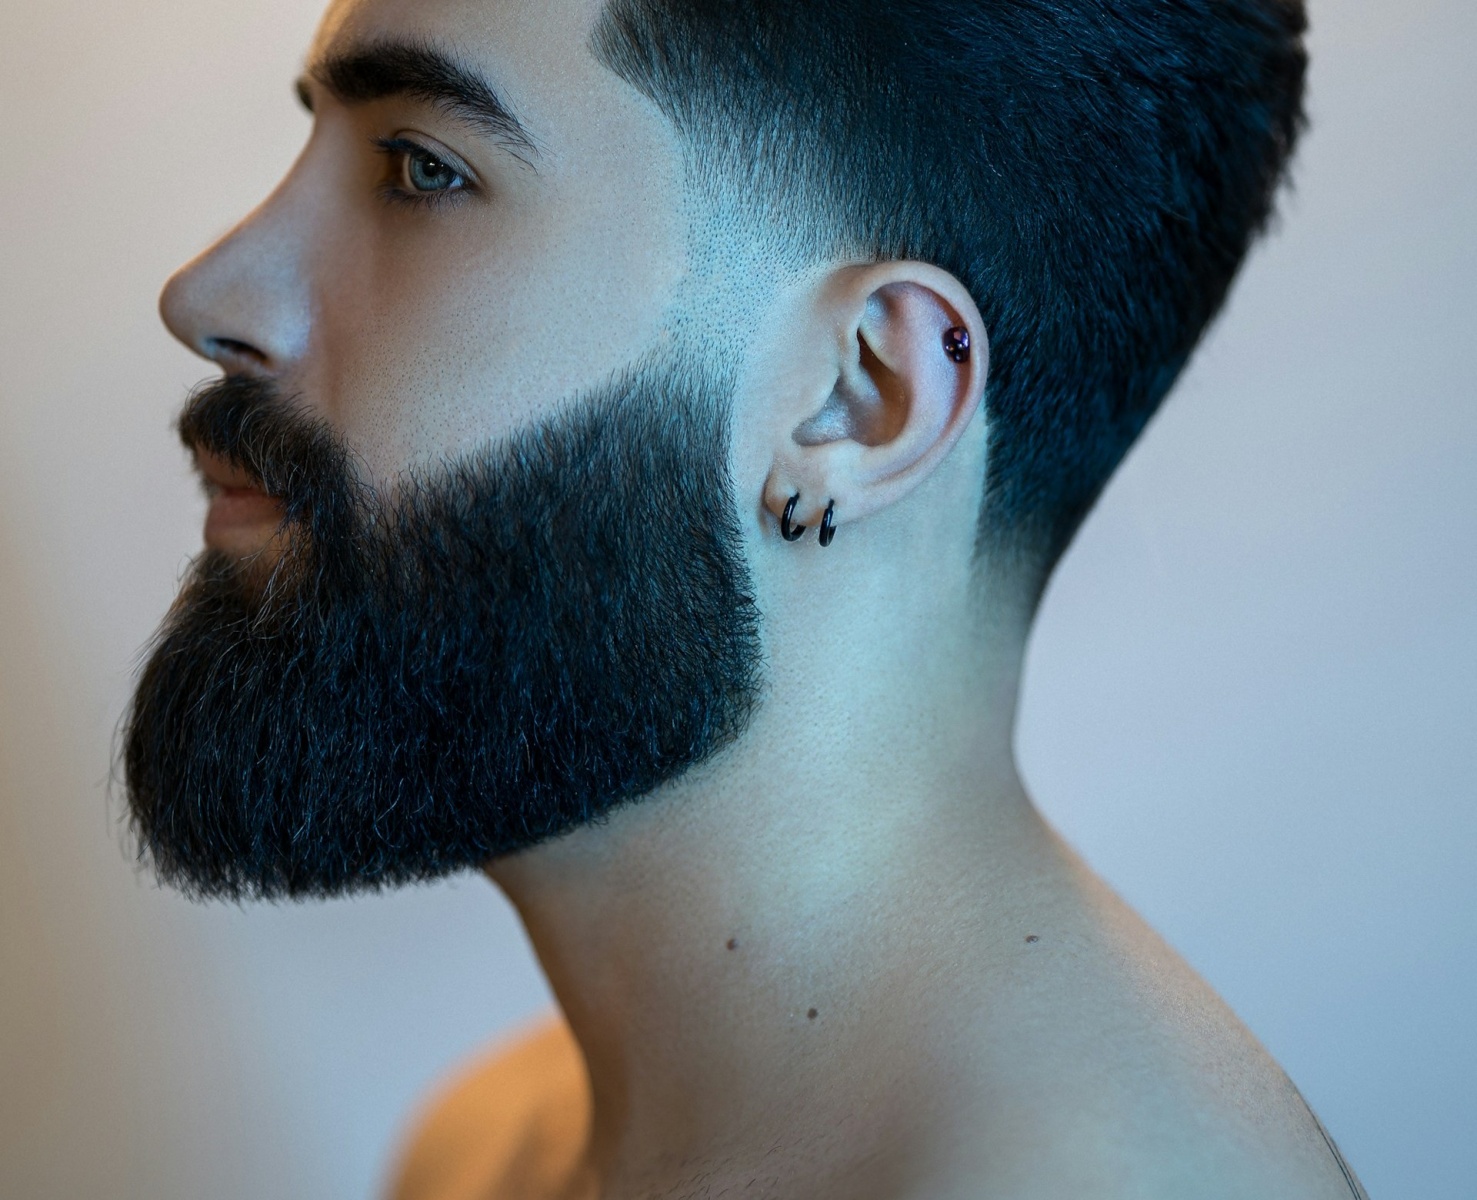 Beard Dye: How to Use